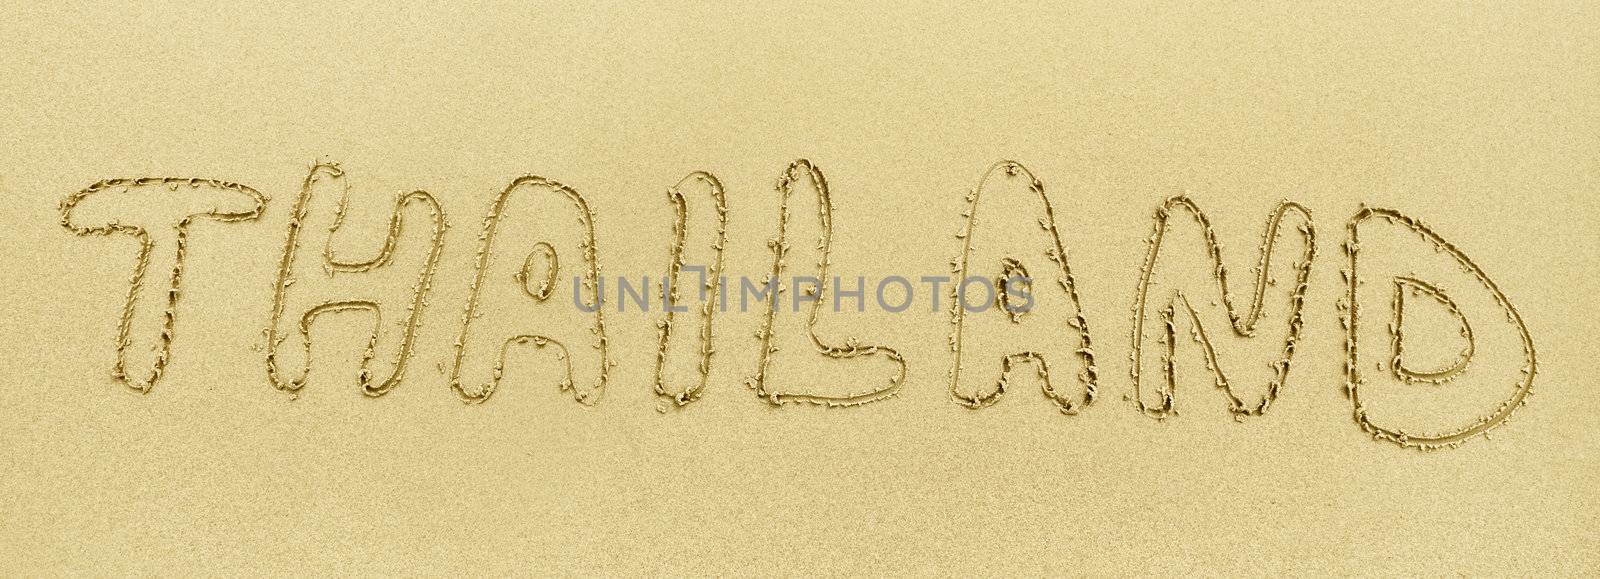 The inscription on the beach sand - Thailand